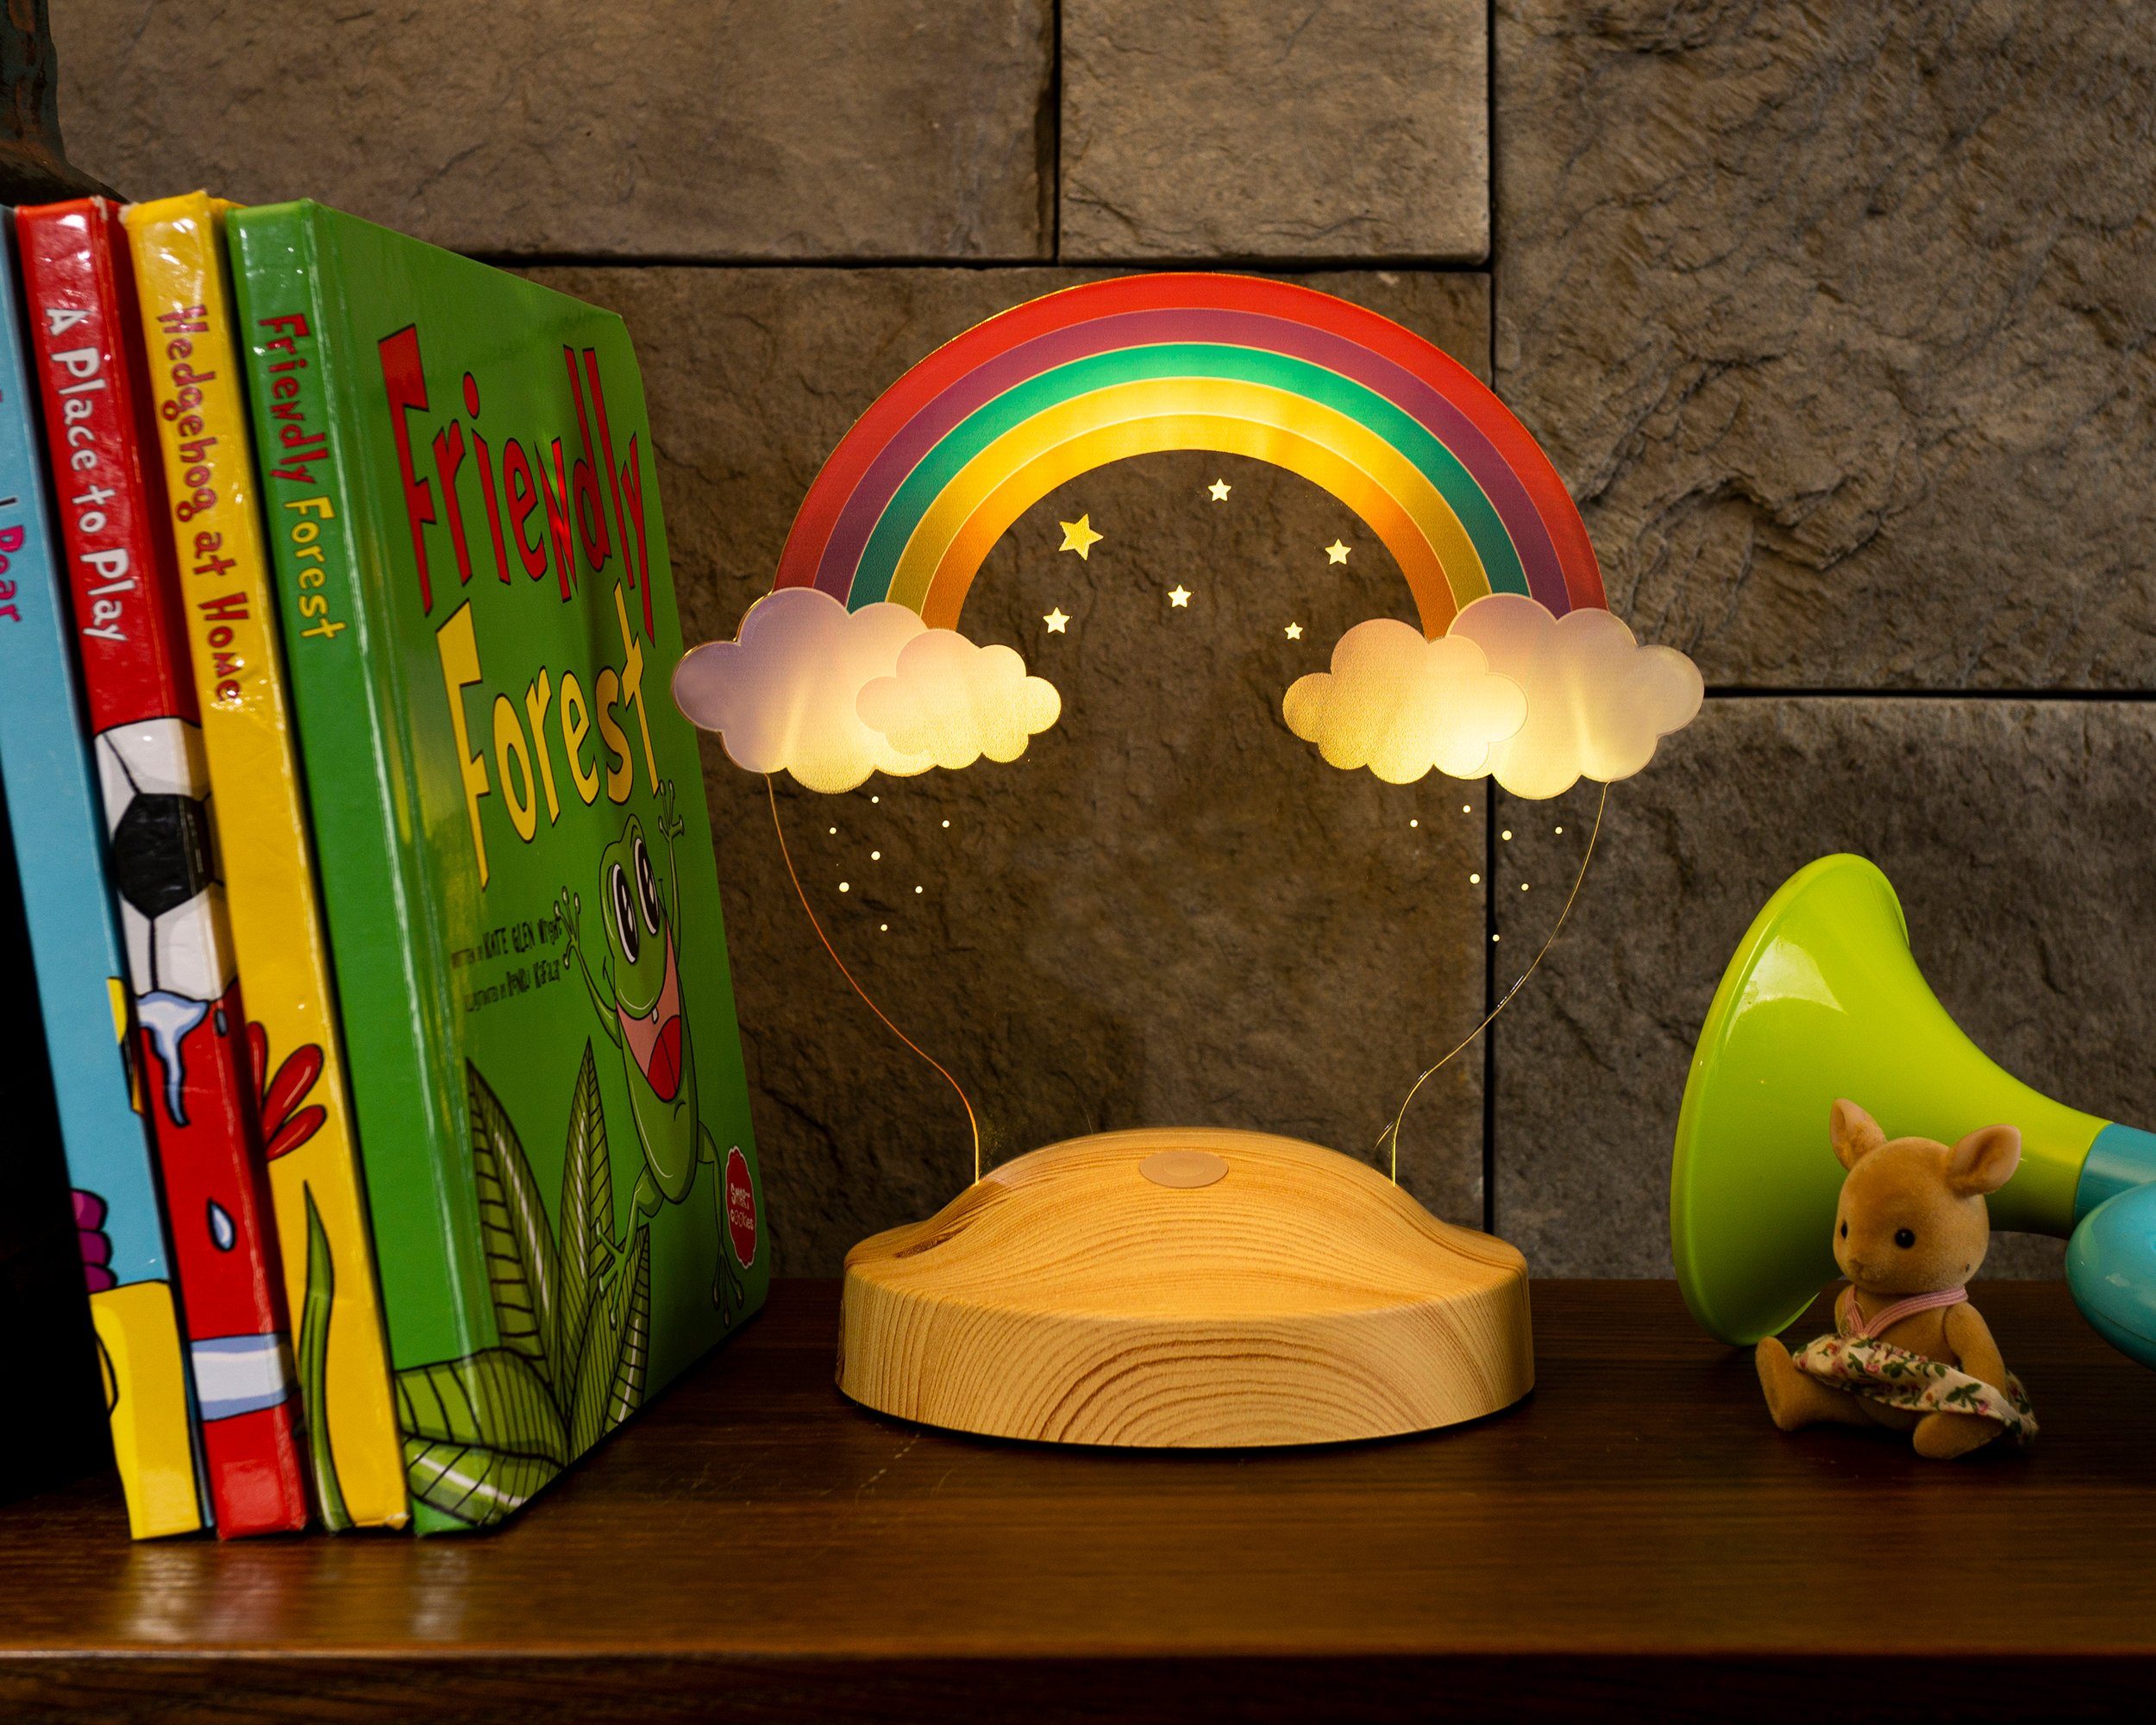 Lampe Regenbogen verschiedenen Farben, Geburtstags UV Led weihnachtsgeschenk für integriert, fest Druck Nachttischlampe für Taufgeschenk, Geschenkelampe in LED kinder, LED 3D Regenbogen 6 Ostern LED Geschenk